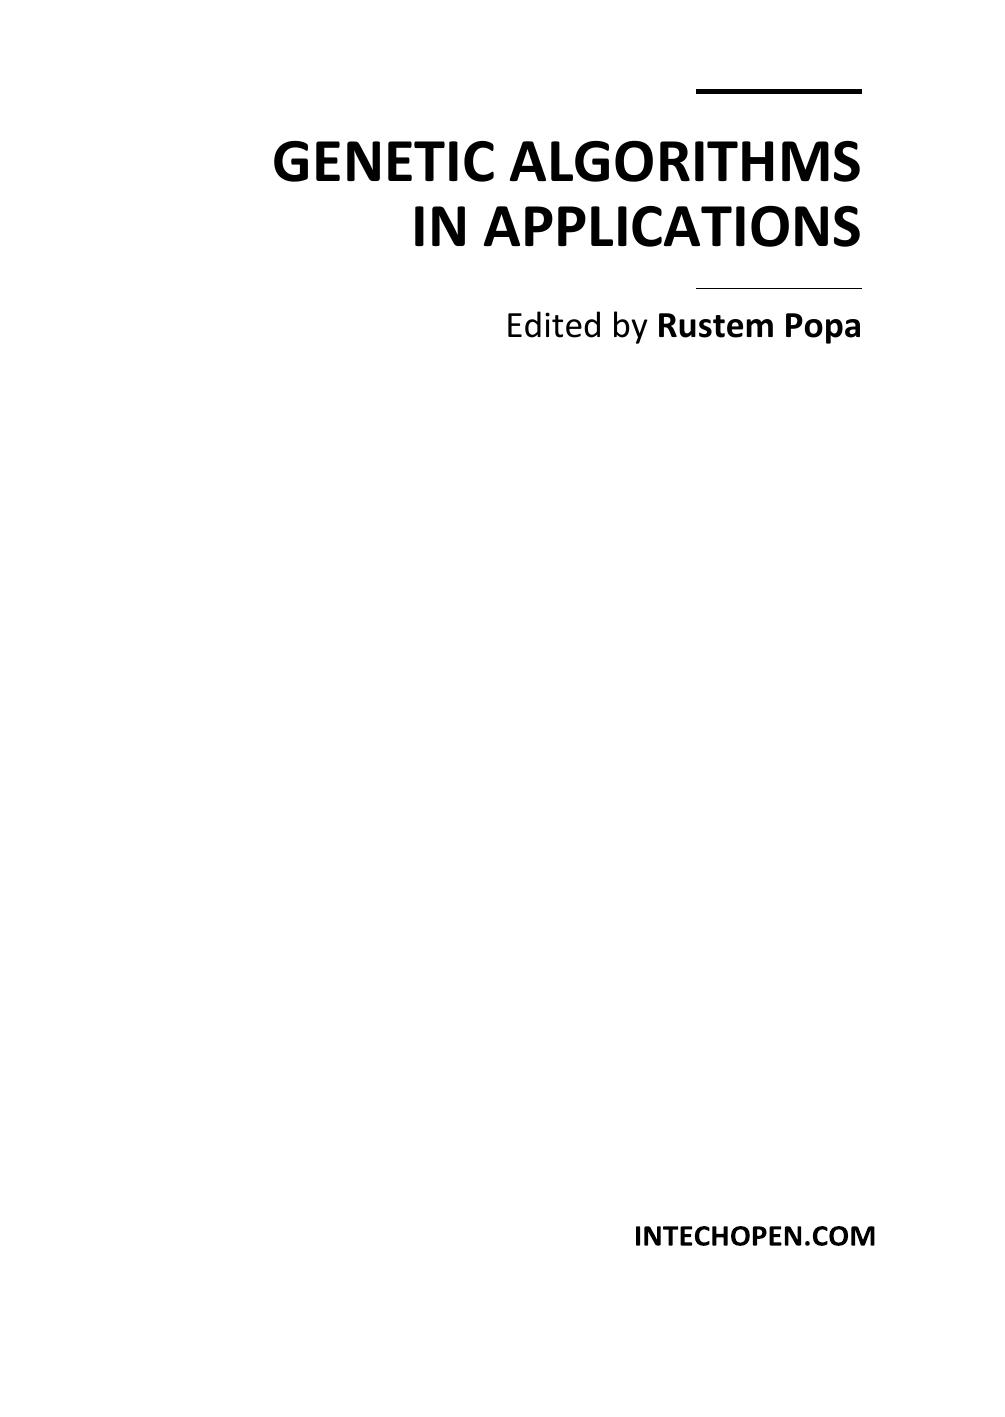 Genetic Algorithms in Applications 2012.pdf